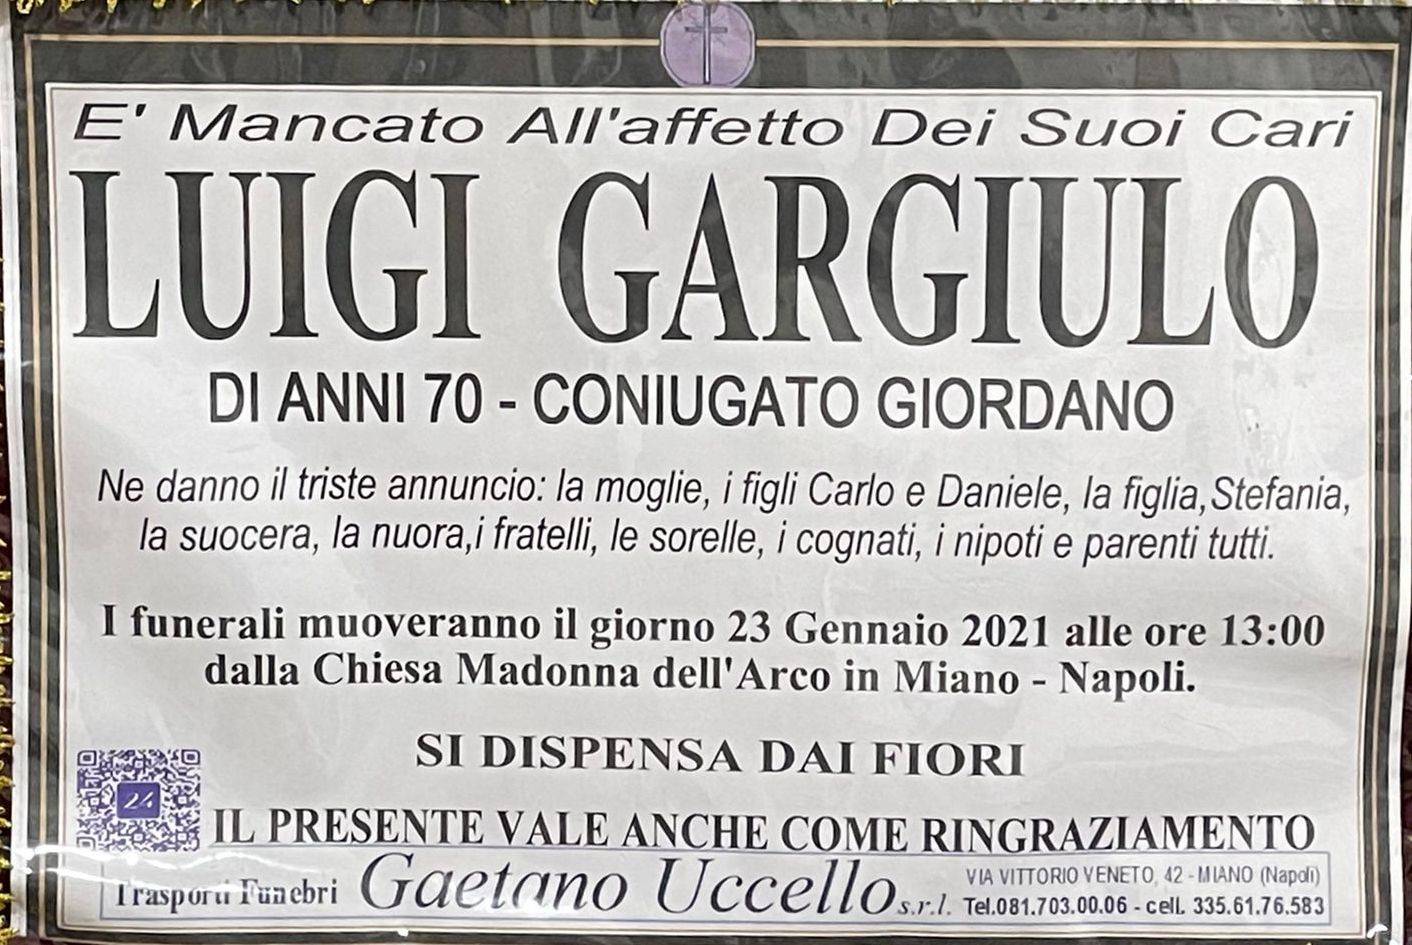 Luigi Gargiulo